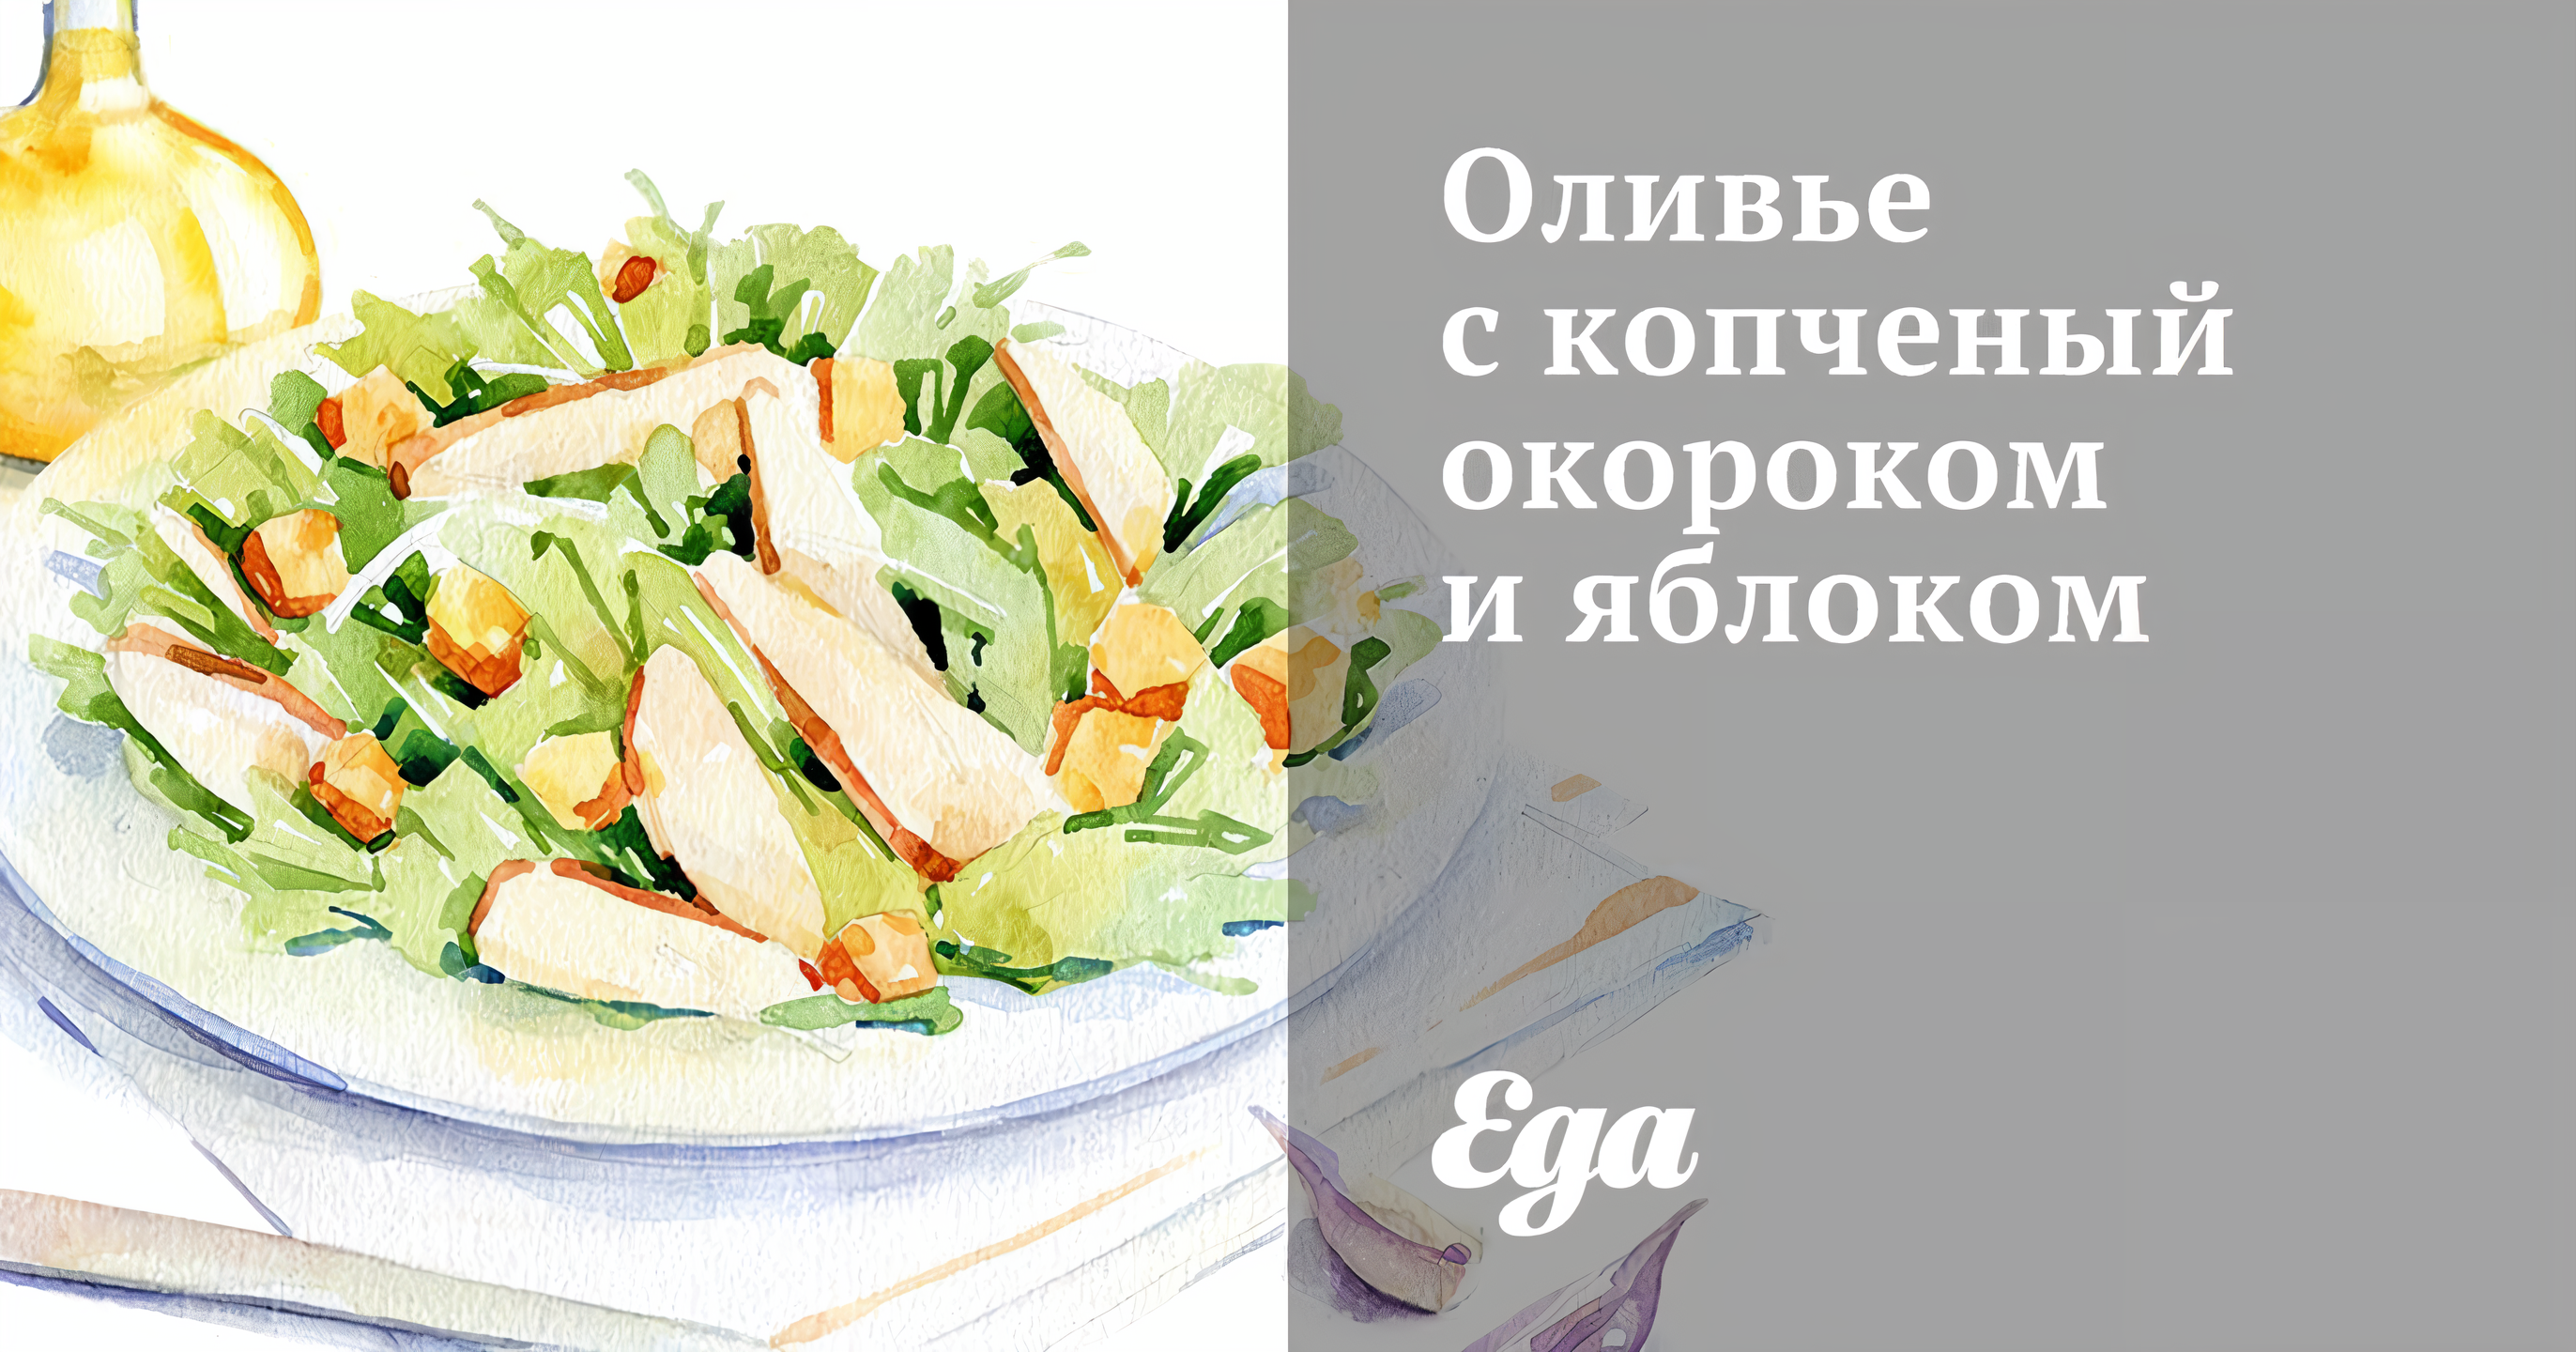 Салат с копченым окороком — рецепты | Дзен